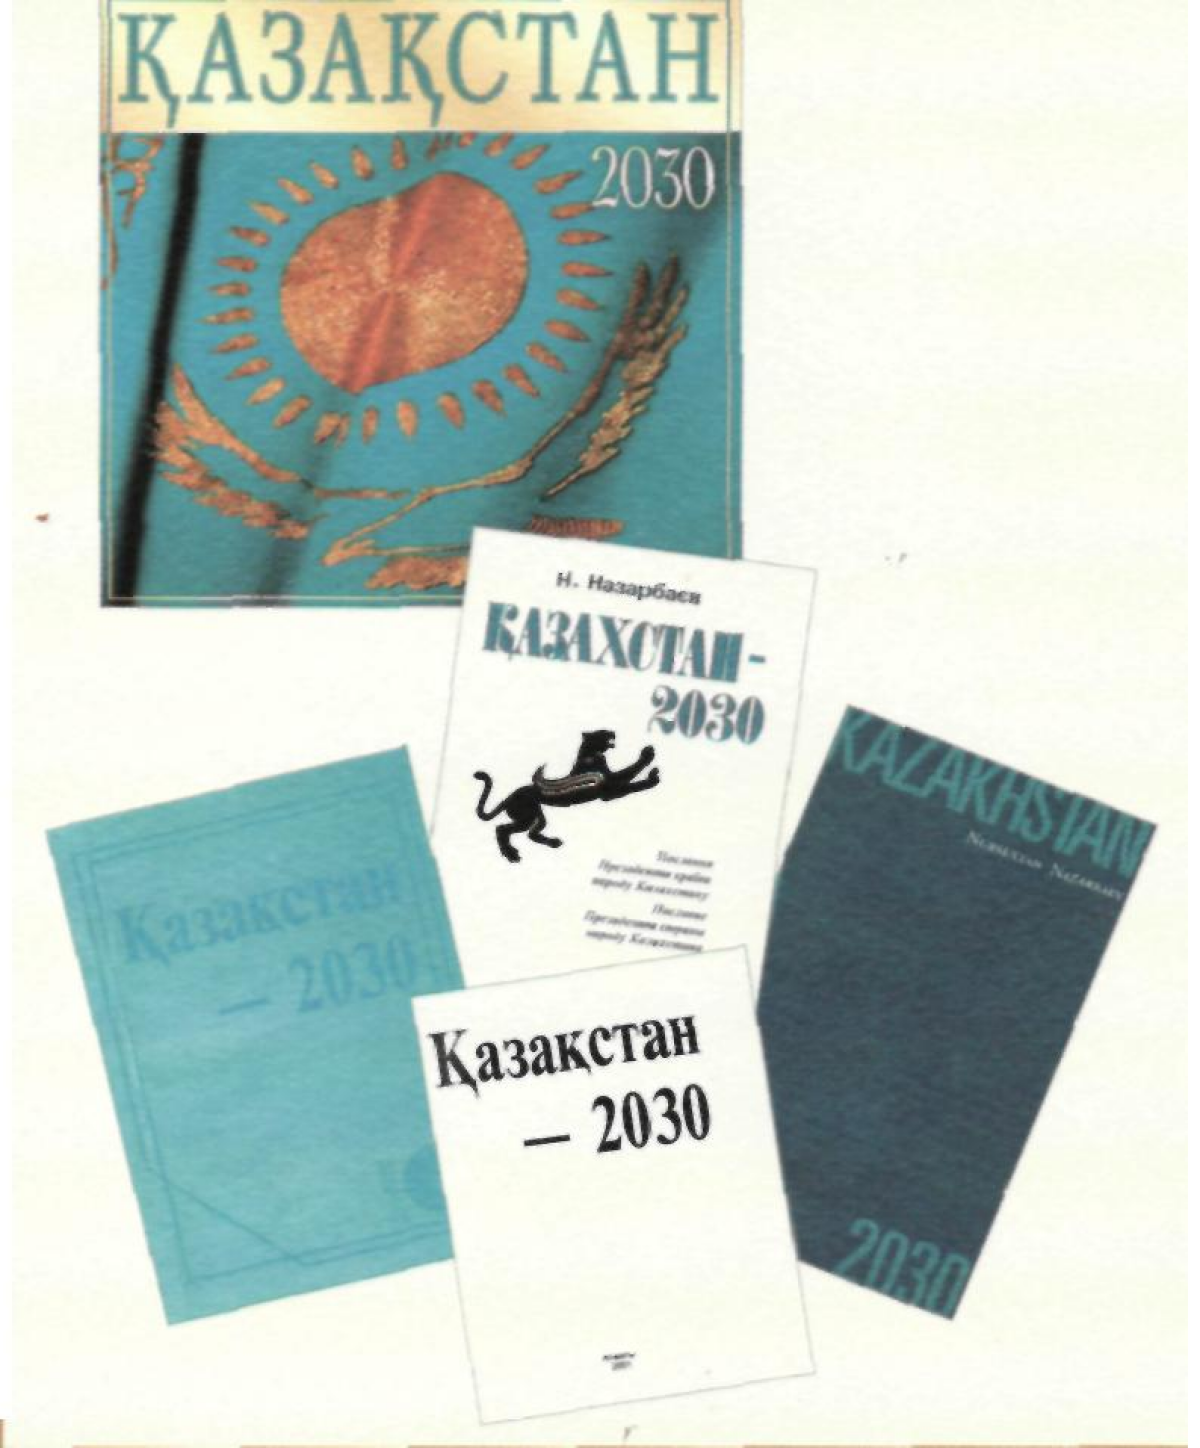 Kazakhstan — 2030 - e-history.kz